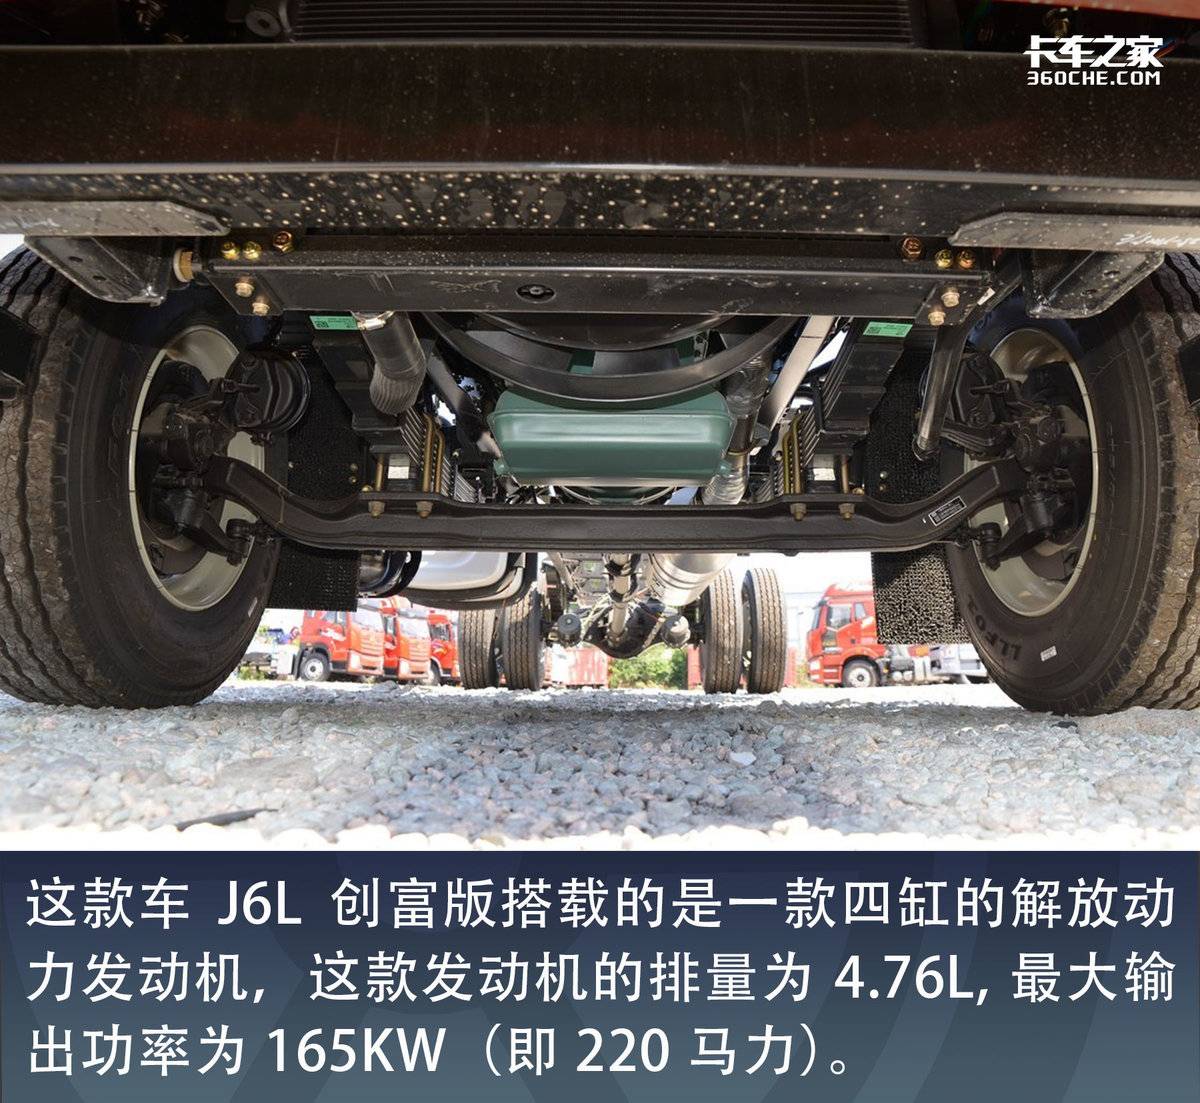 四缸机+八挡箱的6.8米 J6L创富版速报